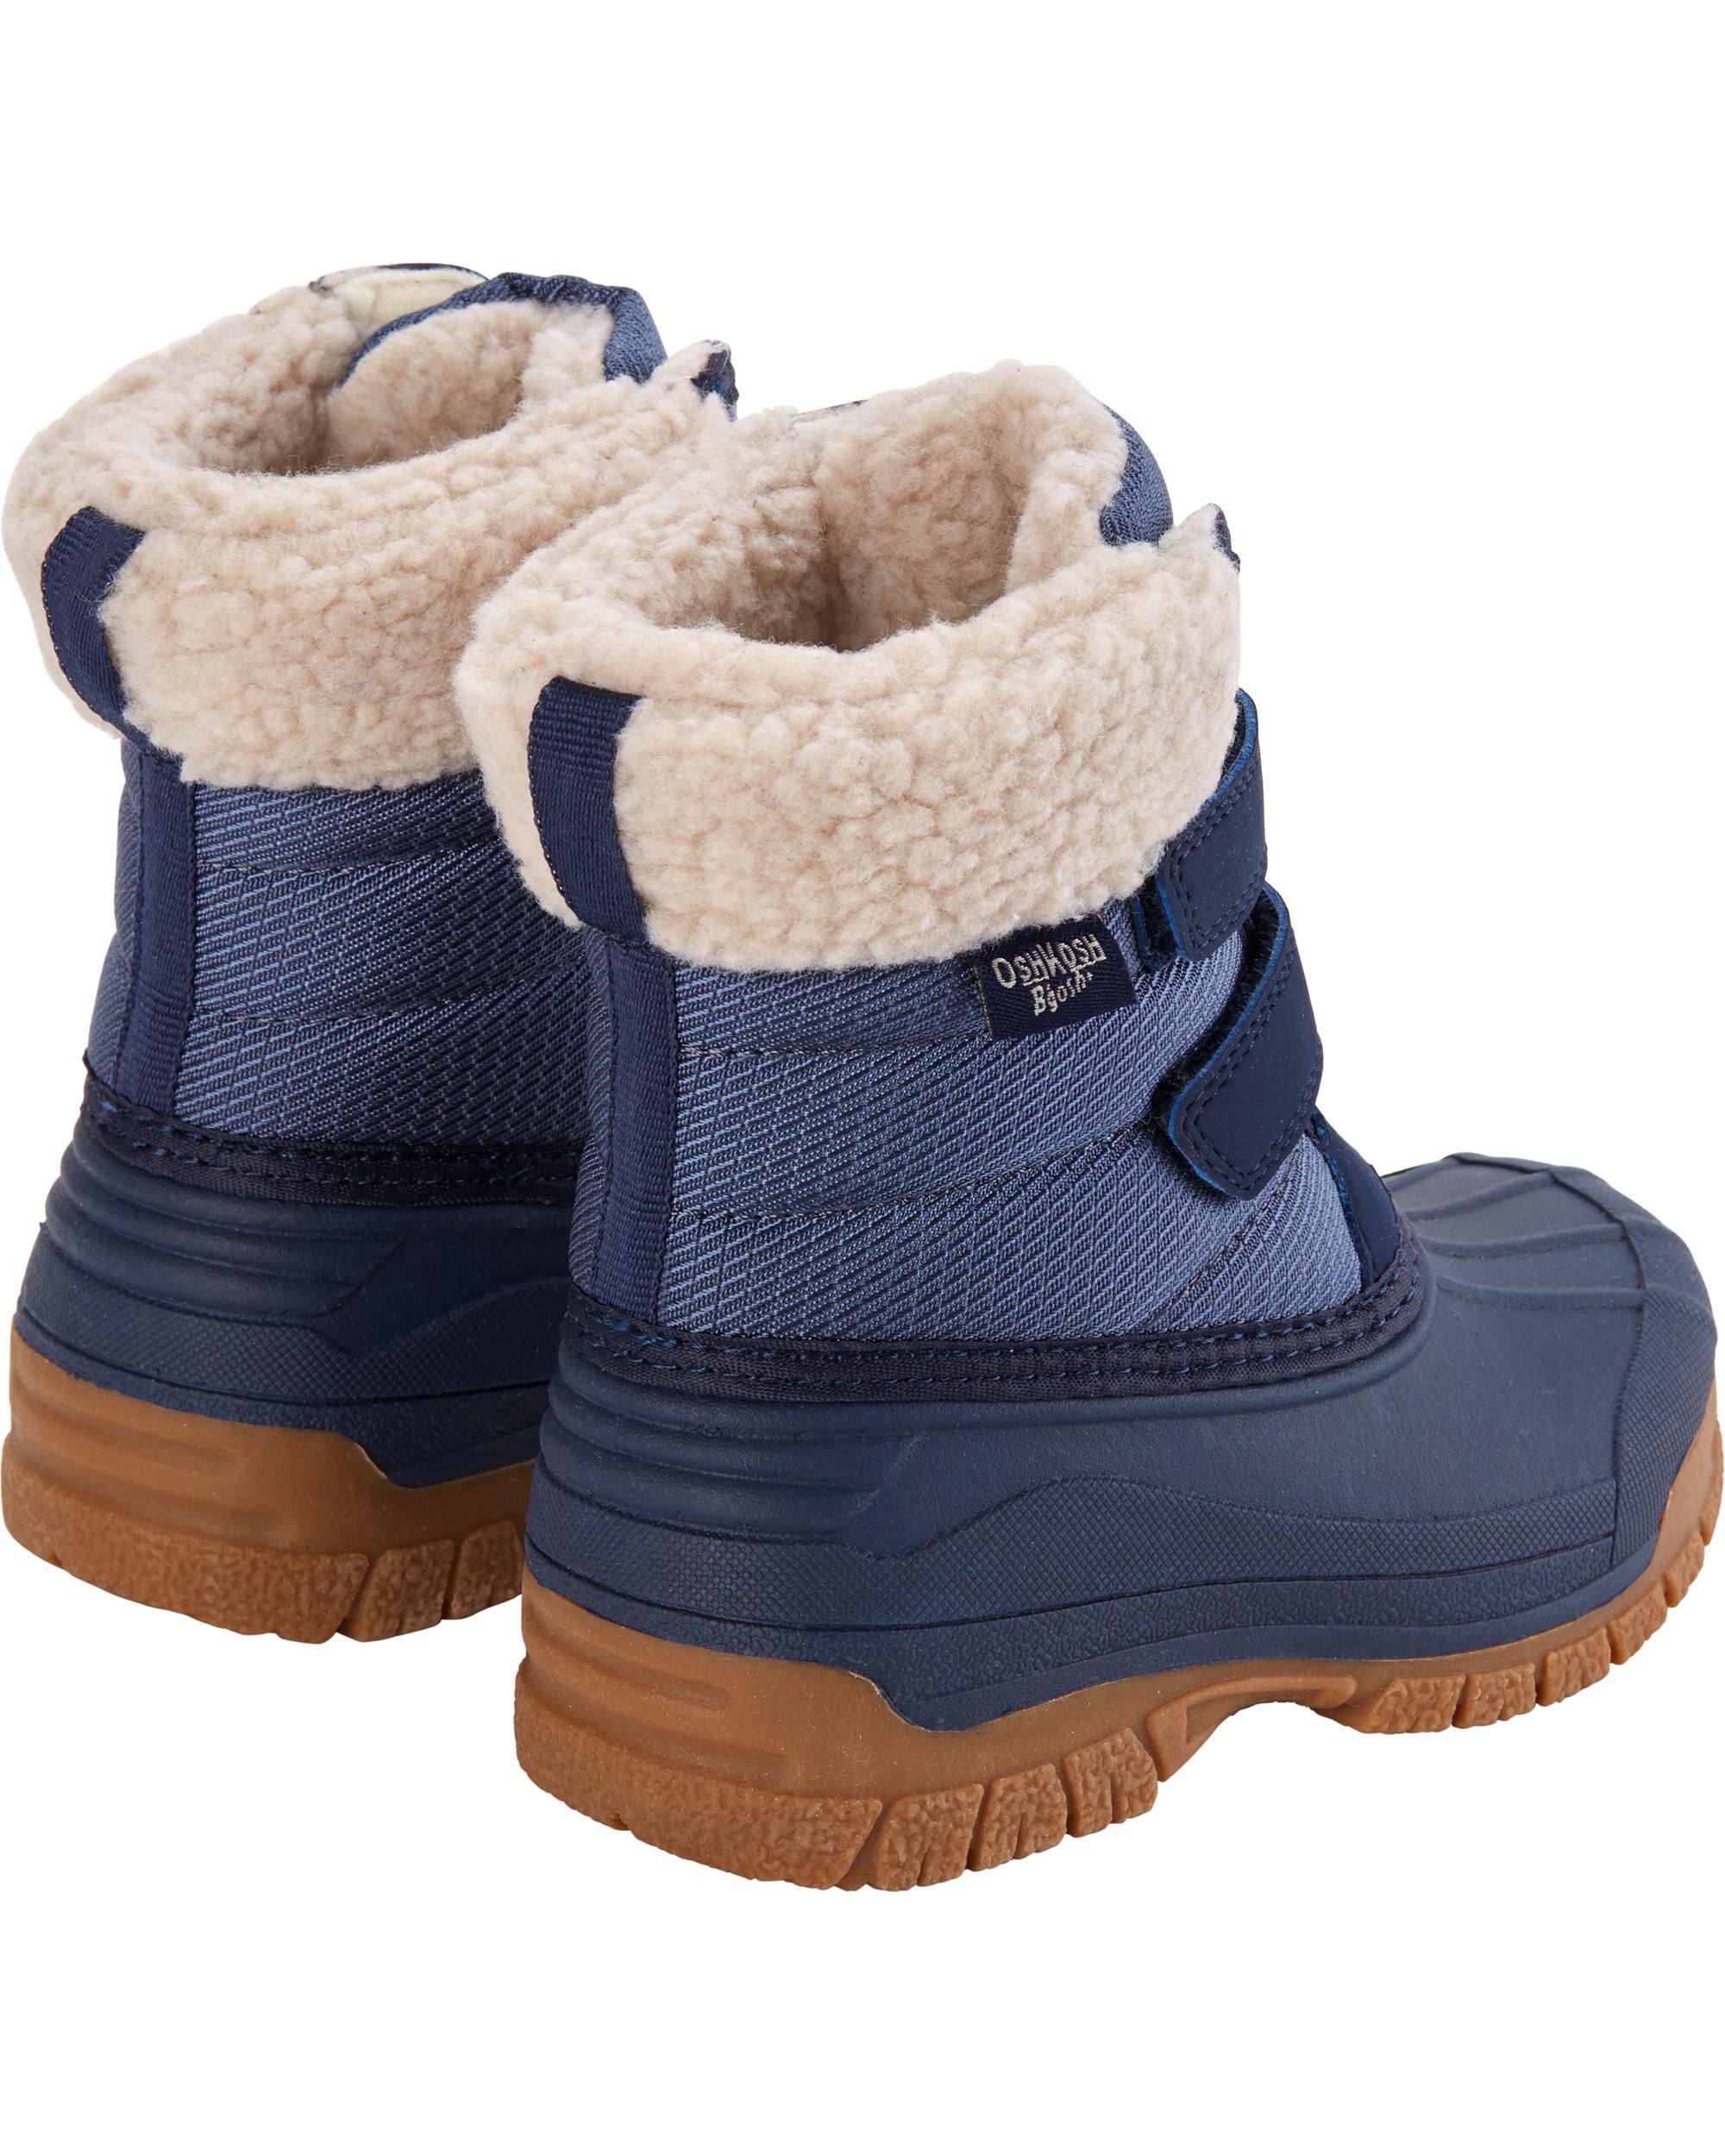 Snow Boots | oshkosh.com